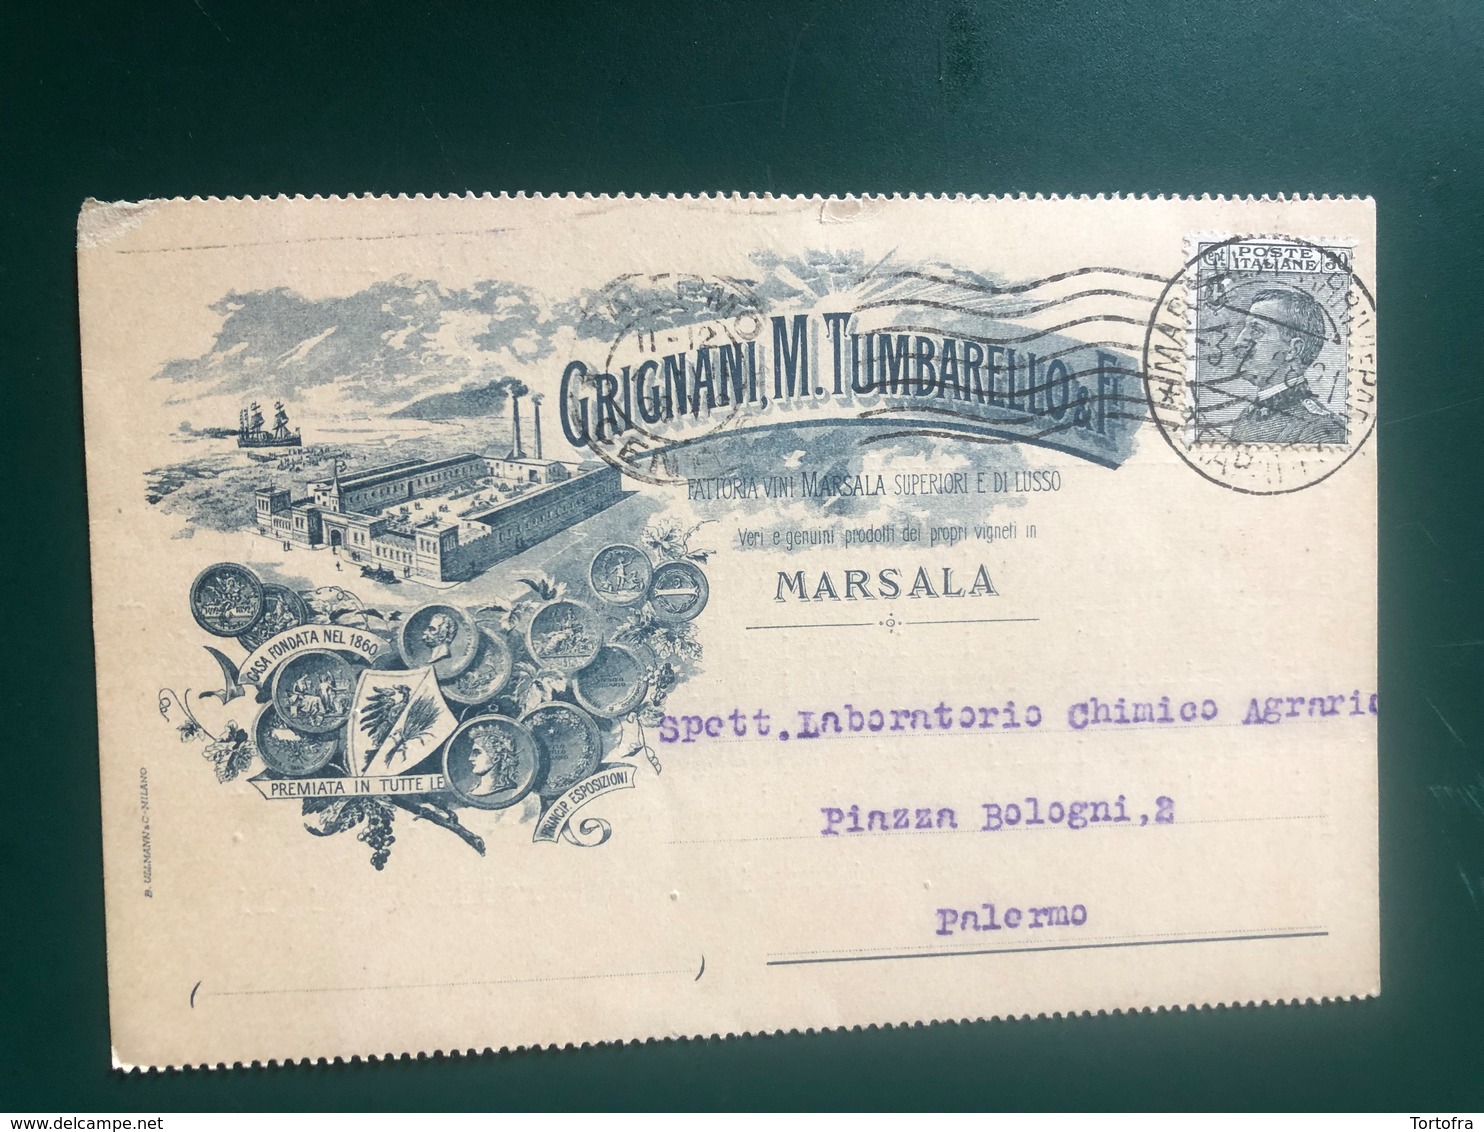 MARSALA (TRAPANI) FATTORIA VINI MARSALA GRIGNANI, M.TUMBARELLO & FIGLI 1928  UVA VINI - Marsala